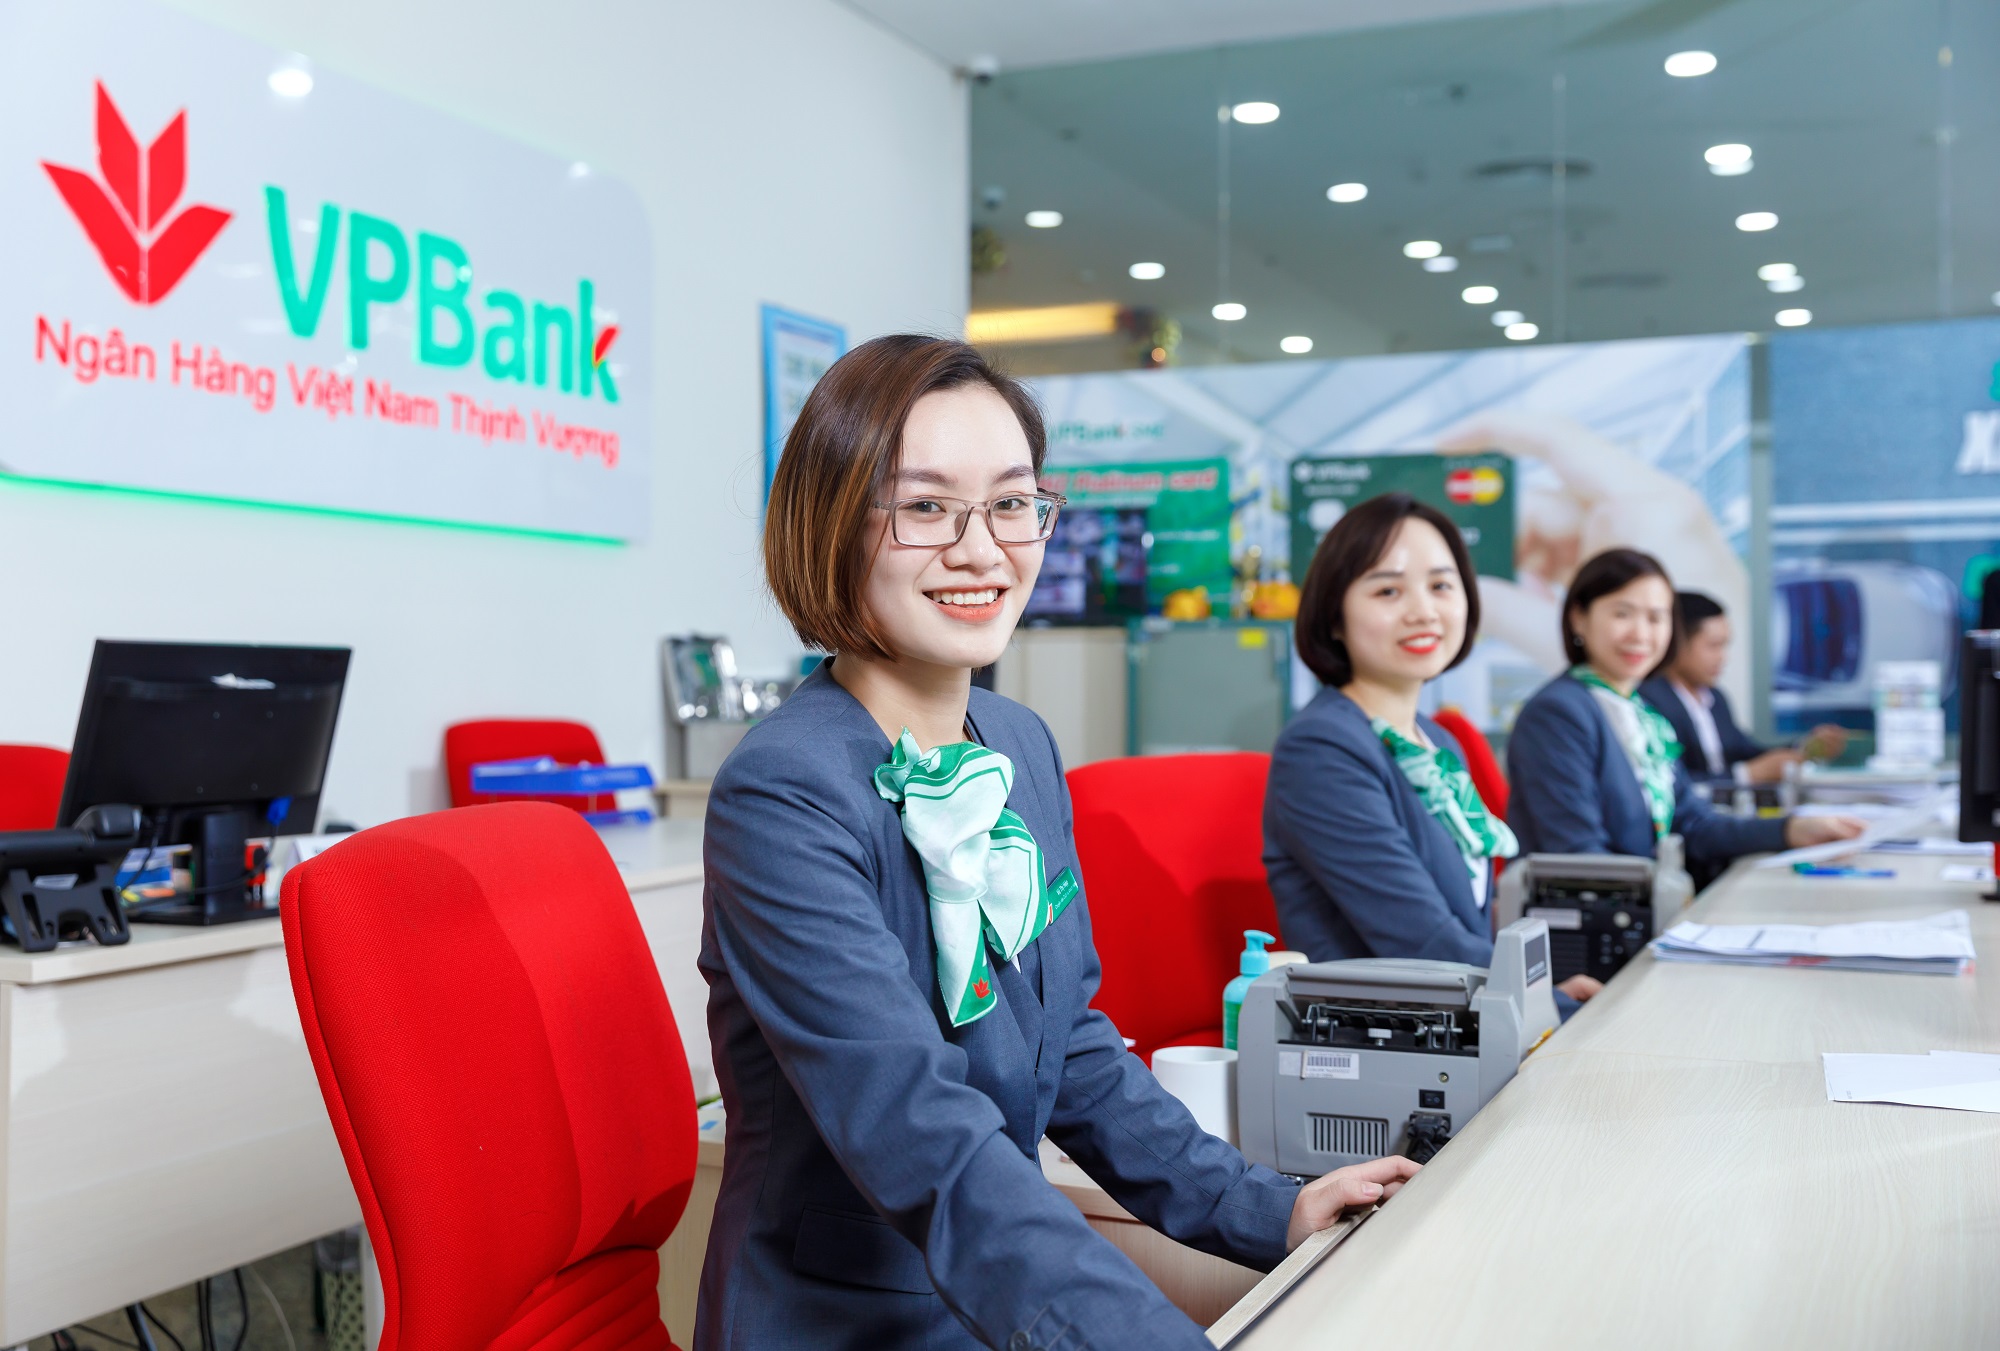 Những khác biệt trong cách xây dựng ngân hàng số của VPBank